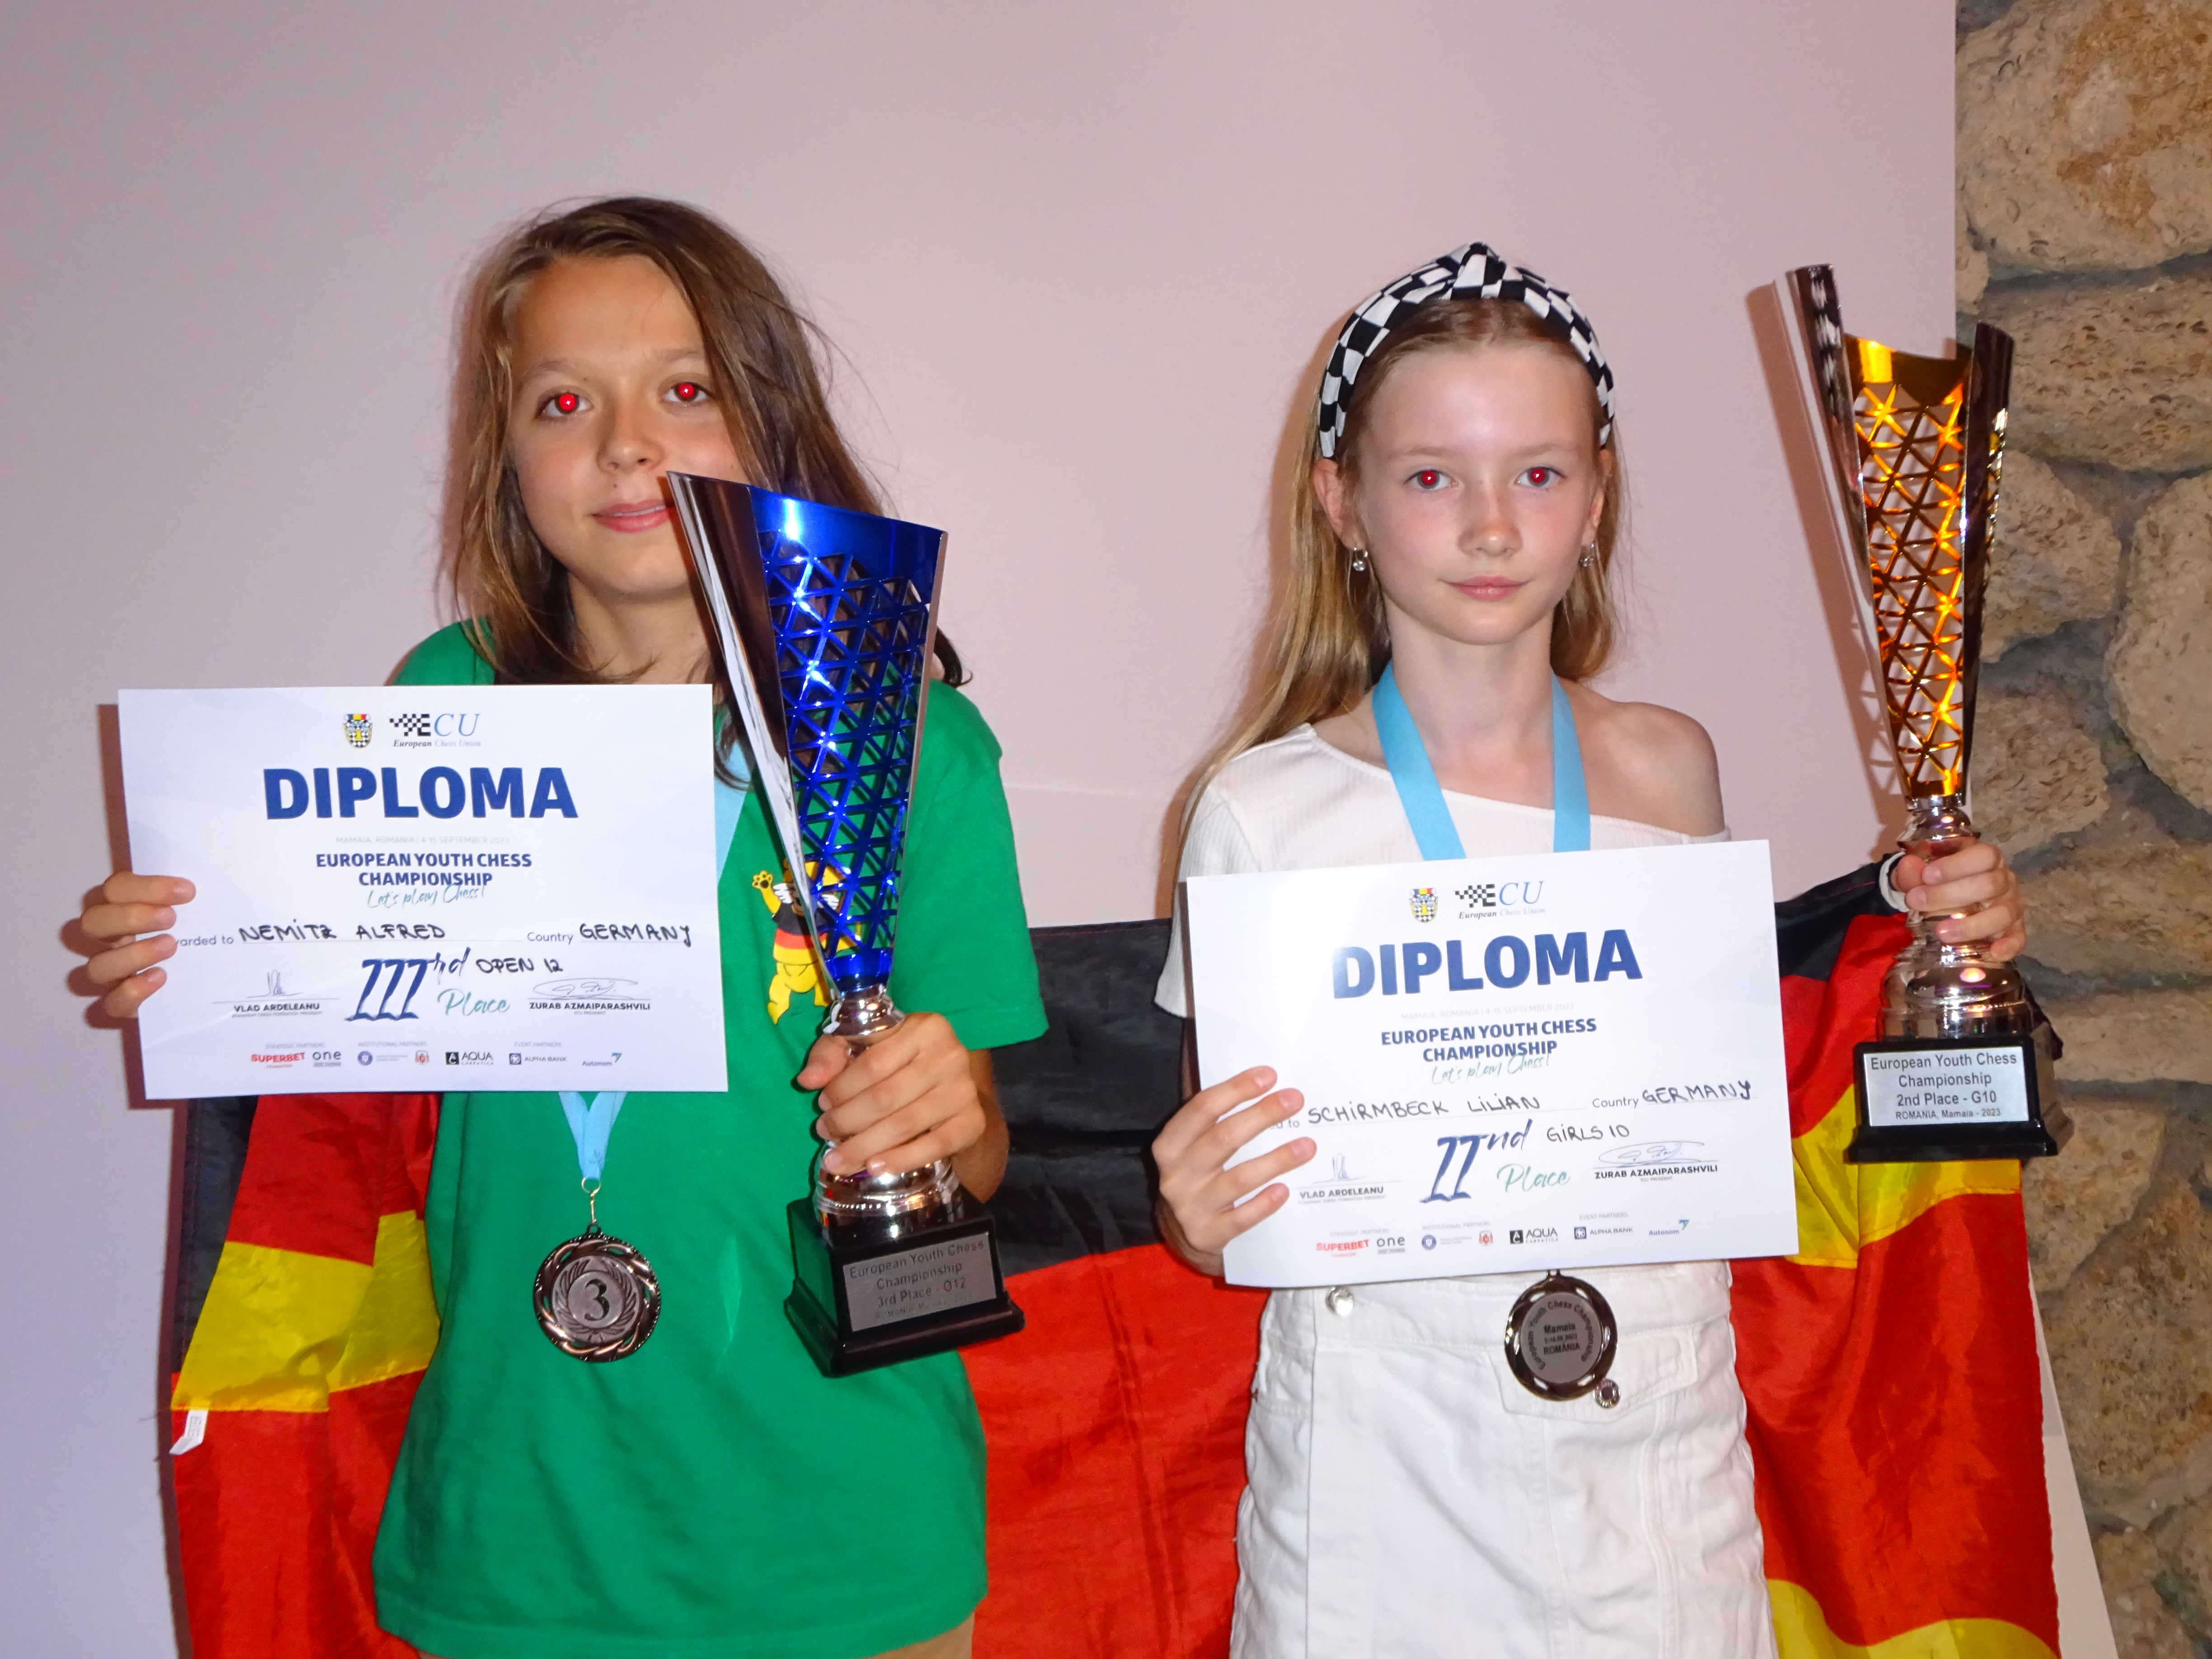 Bronze für Elisabeth Pähtz bei der Schnellschach-WM - Deutscher Schachbund  - Schach in Deutschland